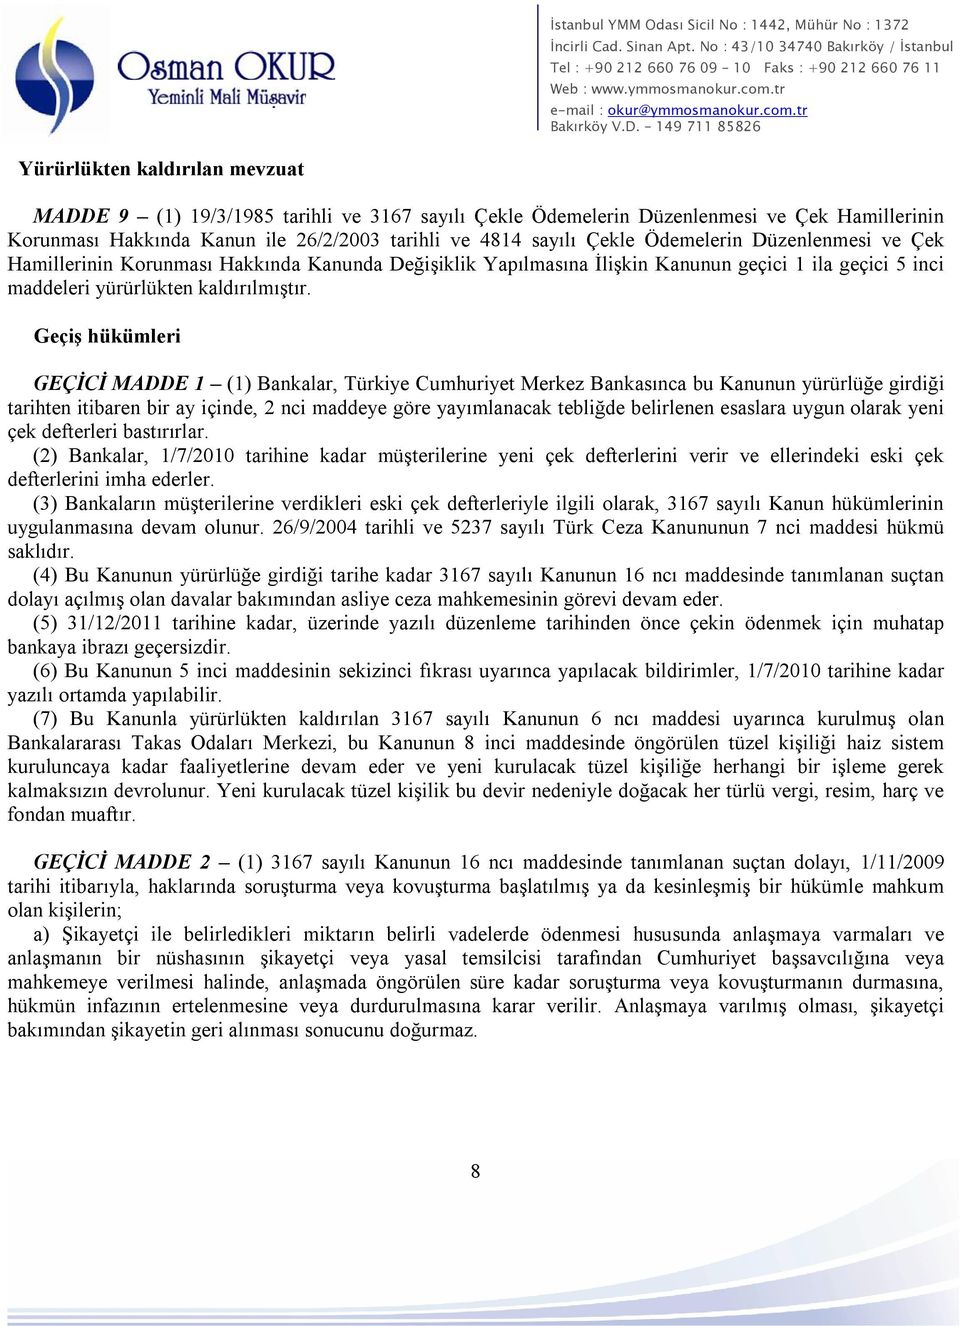 Geçiş hükümleri GEÇİCİ MADDE 1 (1) Bankalar, Türkiye Cumhuriyet Merkez Bankasınca bu Kanunun yürürlüğe girdiği tarihten itibaren bir ay içinde, 2 nci maddeye göre yayımlanacak tebliğde belirlenen